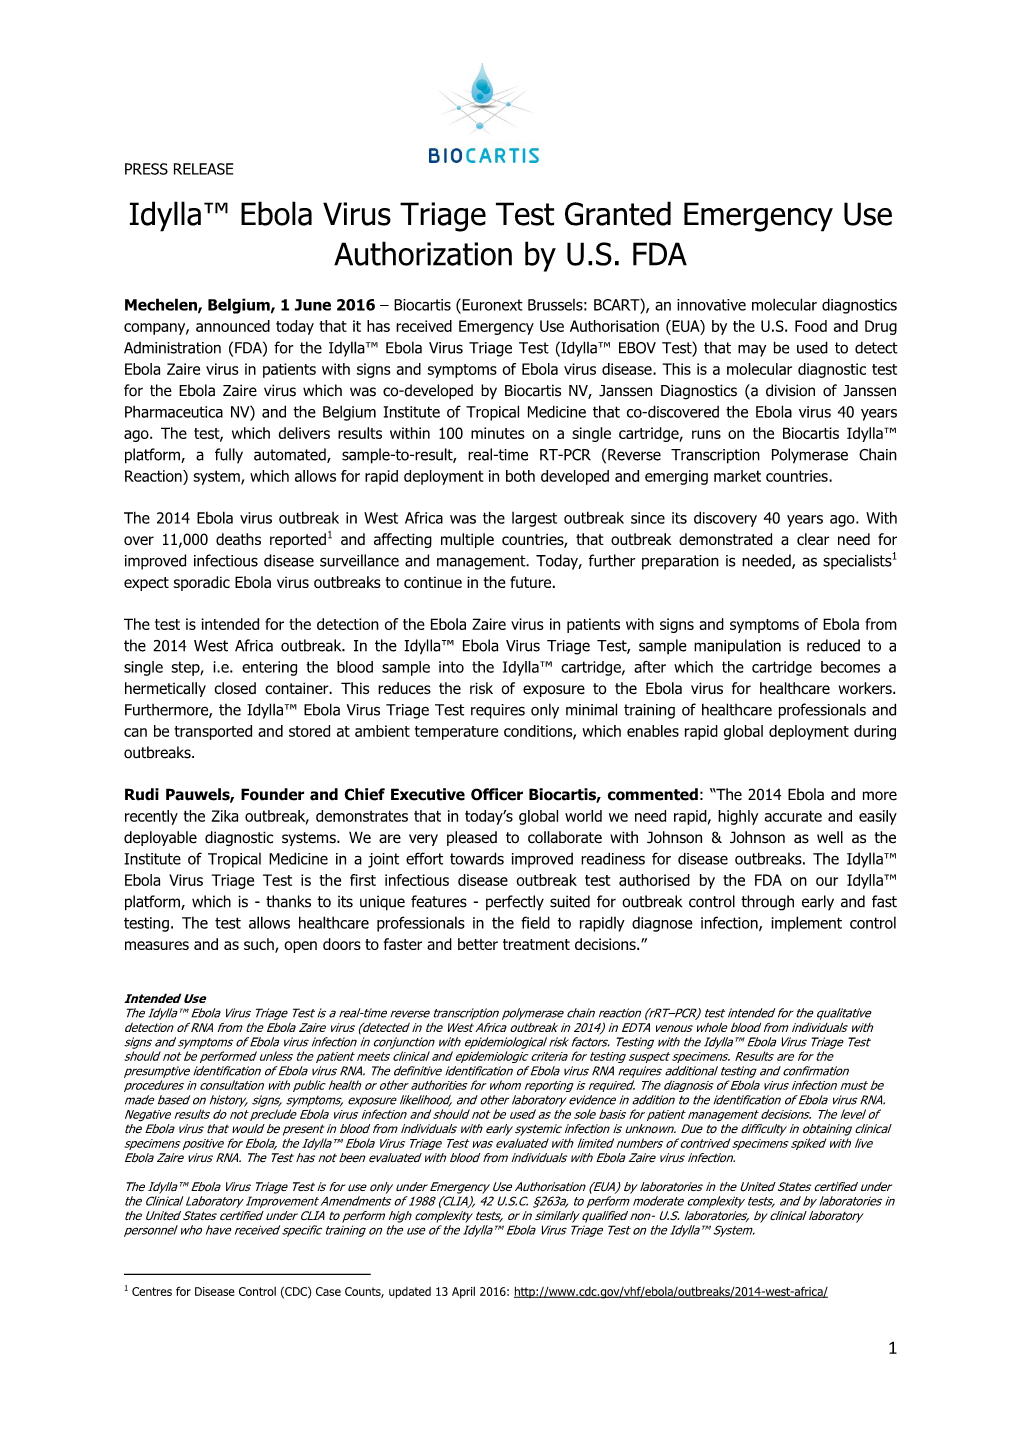 Idylla™ Ebola Virus Triage Test Granted Emergency Use Authorization by U.S